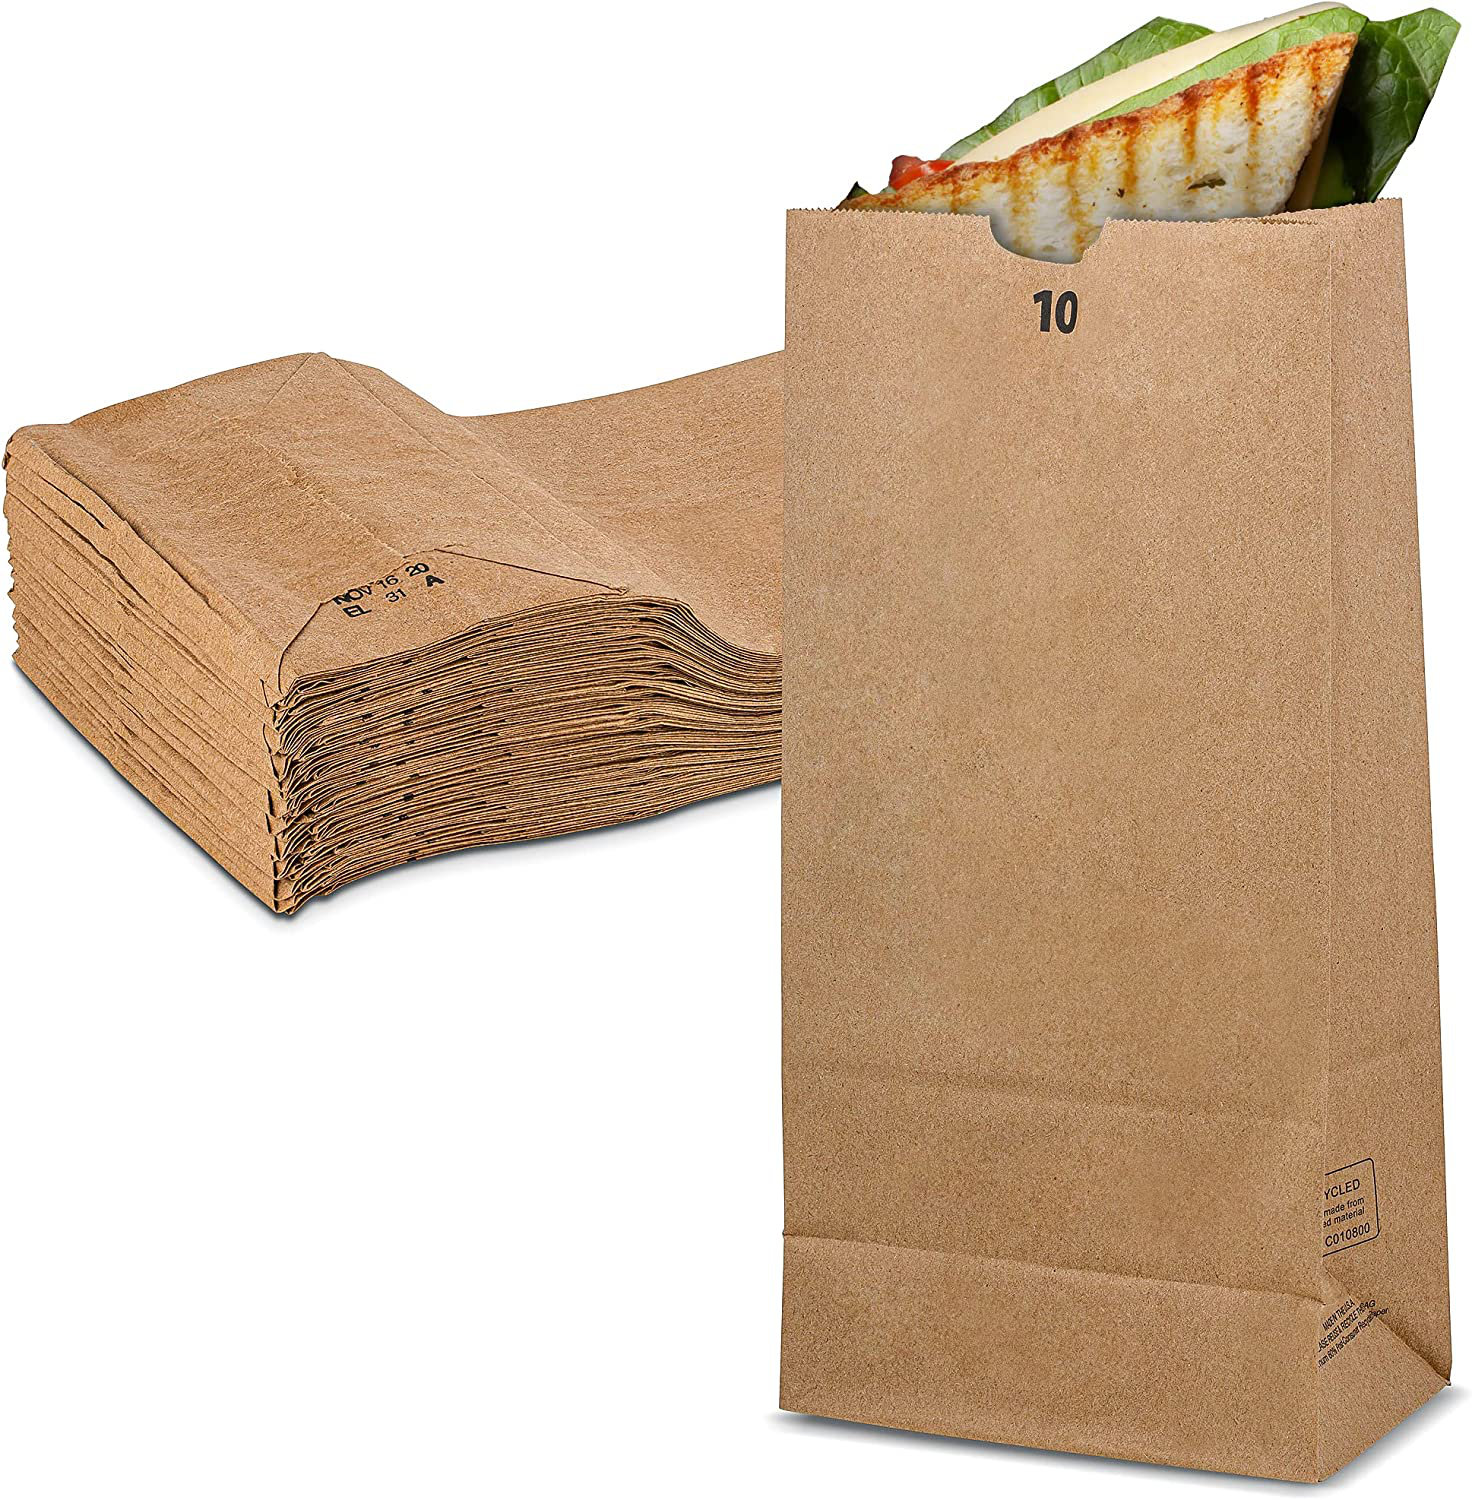 Paper Bags - Wayfair Canada